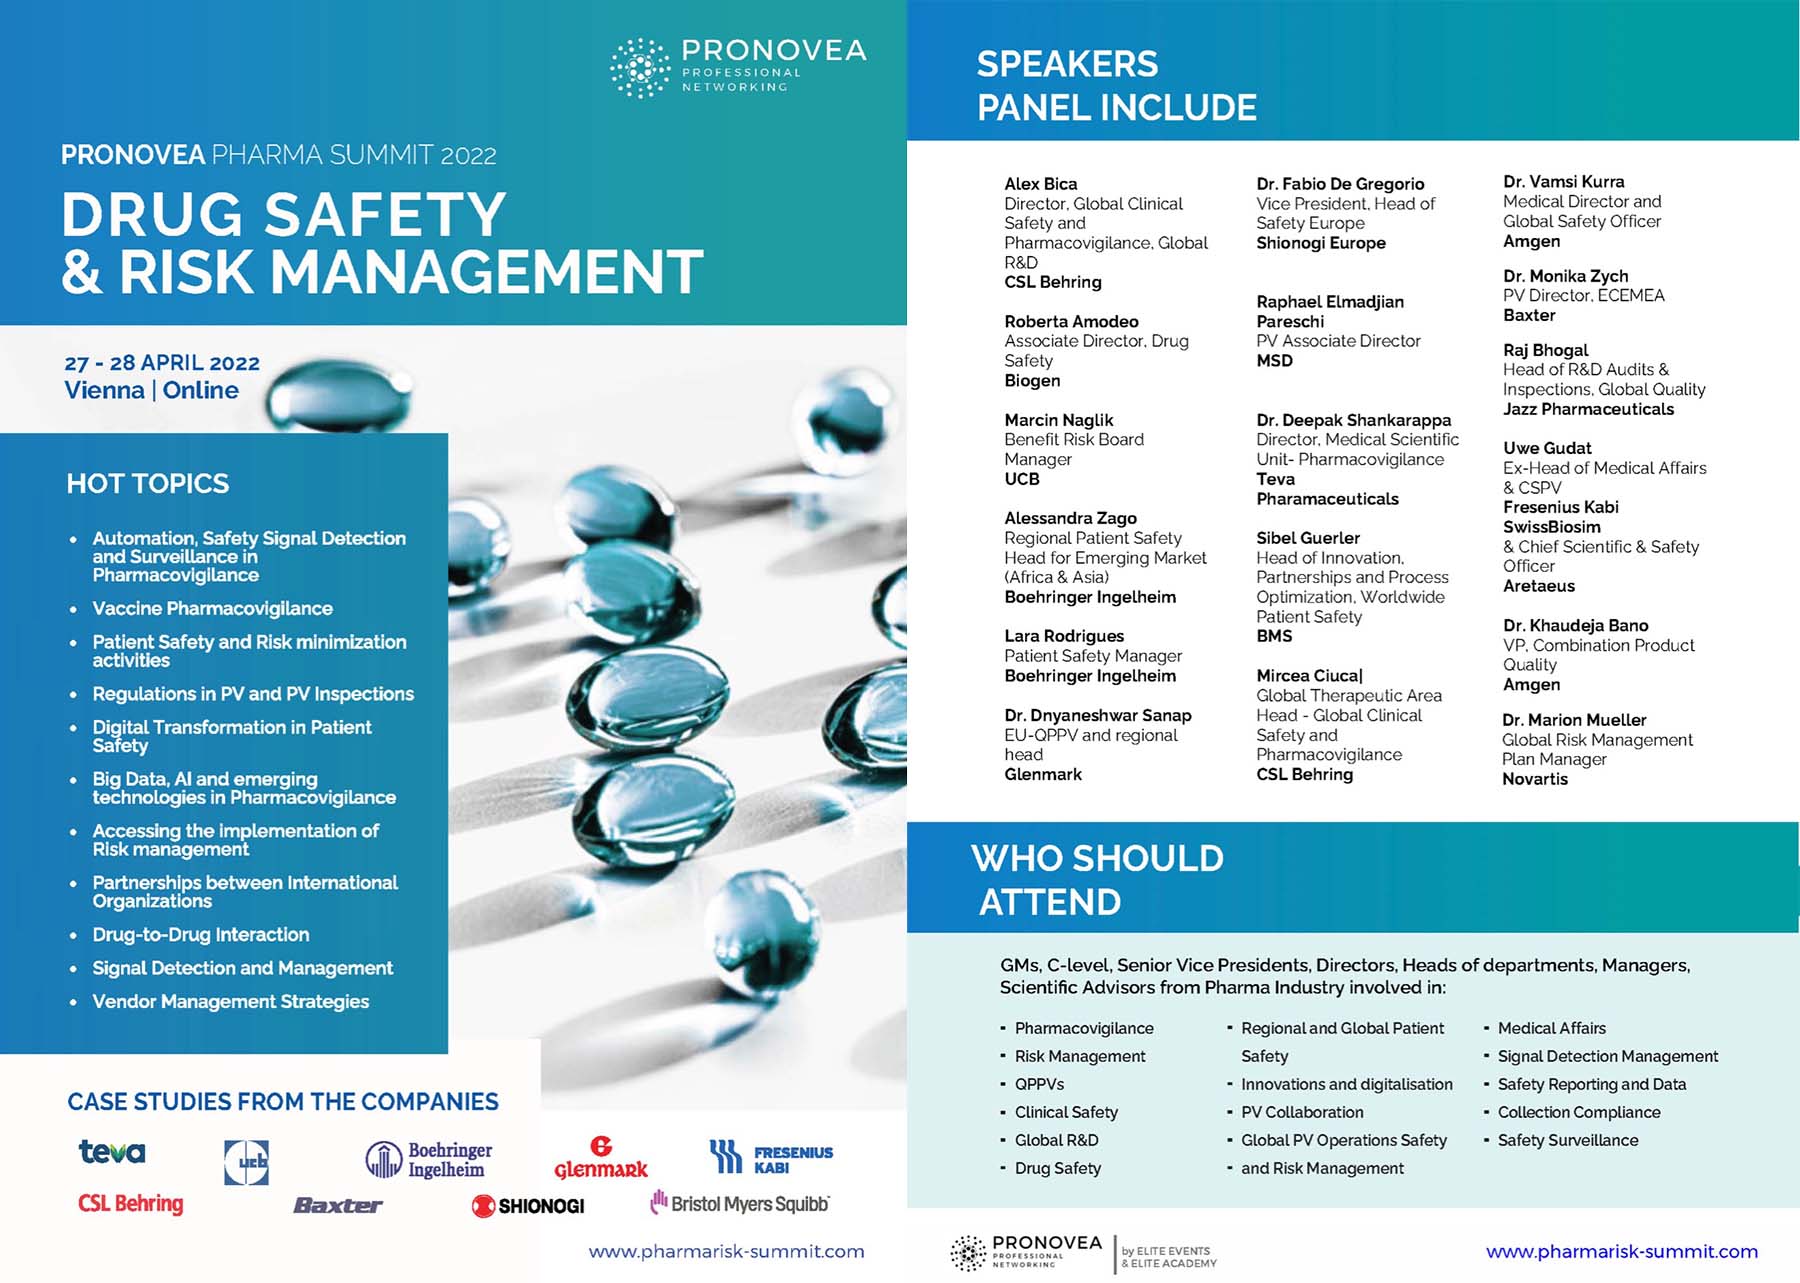 PRONOVEA Pharma Summit 2022: Drug Safety & Risk Management agenda page